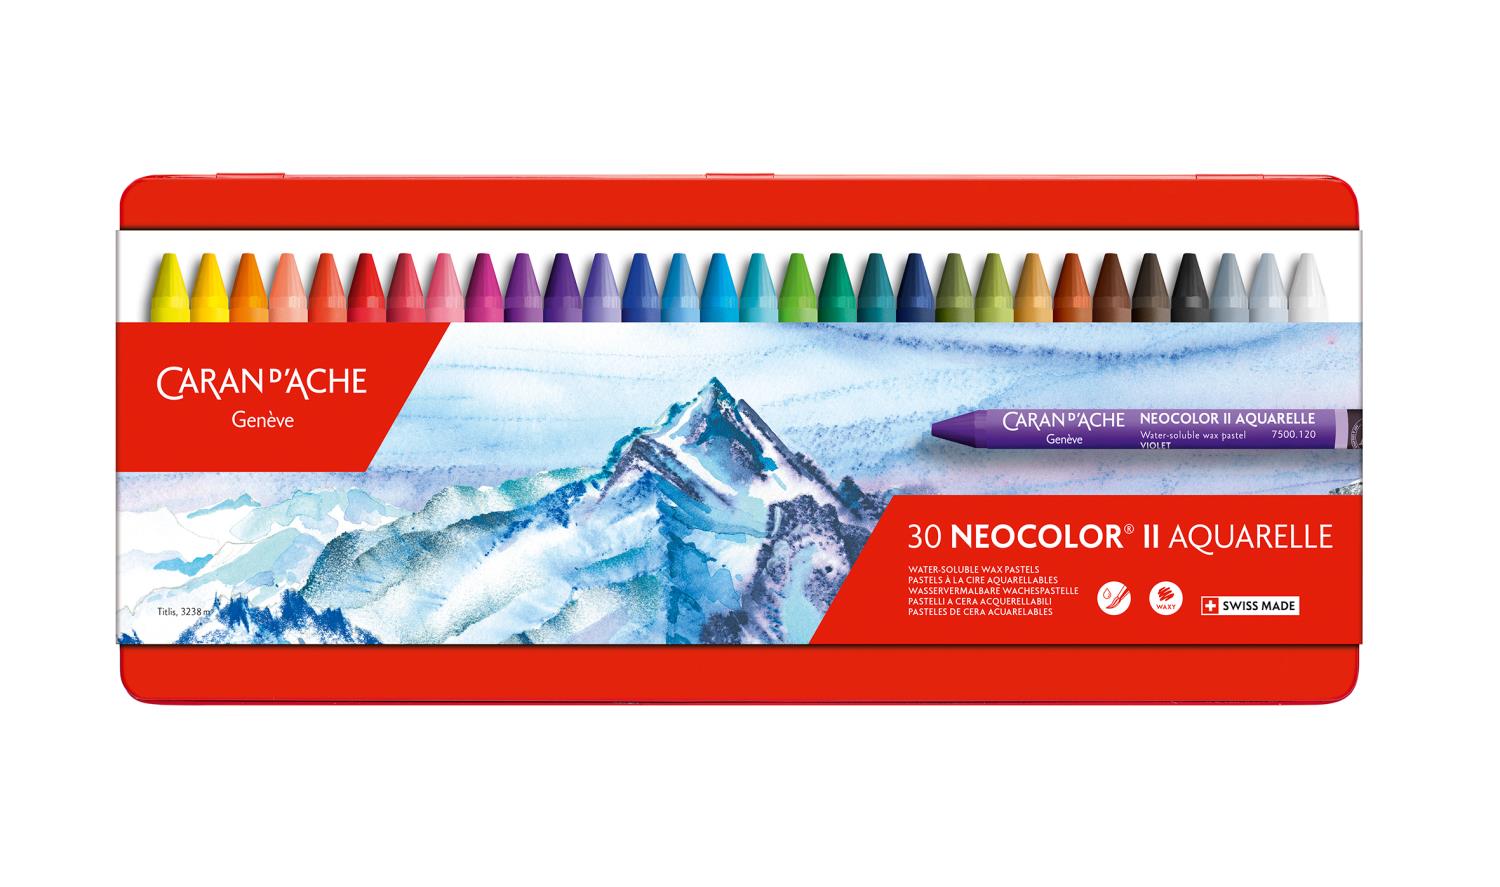 Caran`d ache Neocolor II Water-soluble Wax pastel 30